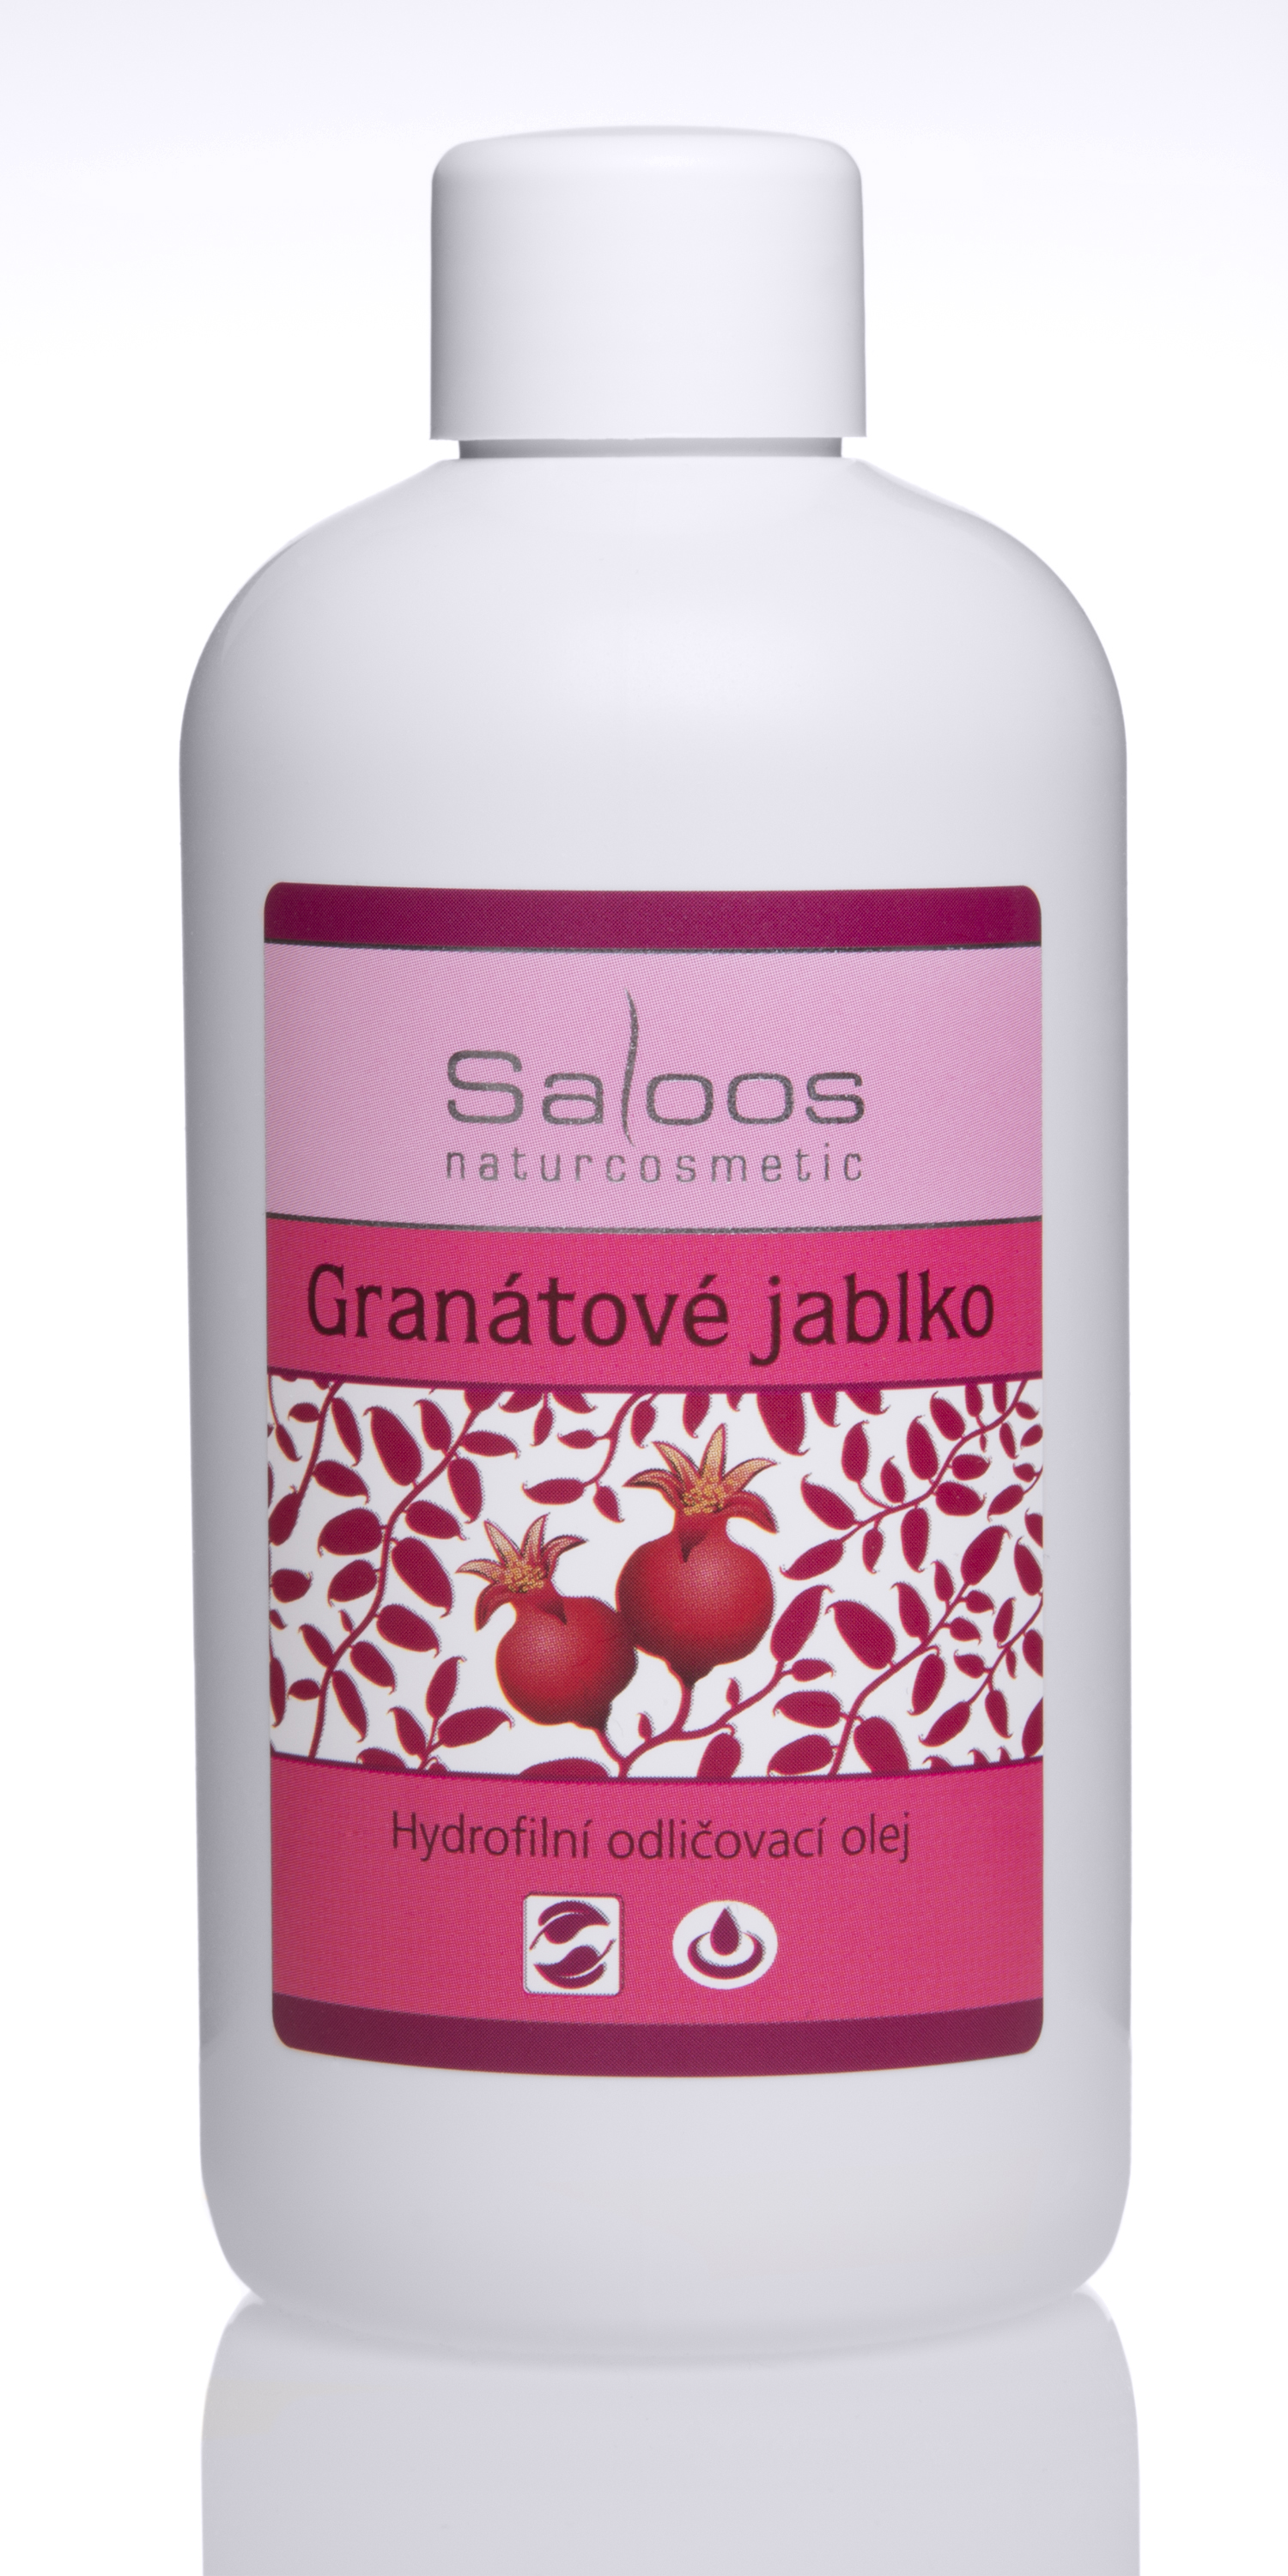 Zobrazit detail výrobku Saloos Hydrofilní odličovací olej - Granátové jablko 250 ml + 2 měsíce na vrácení zboží